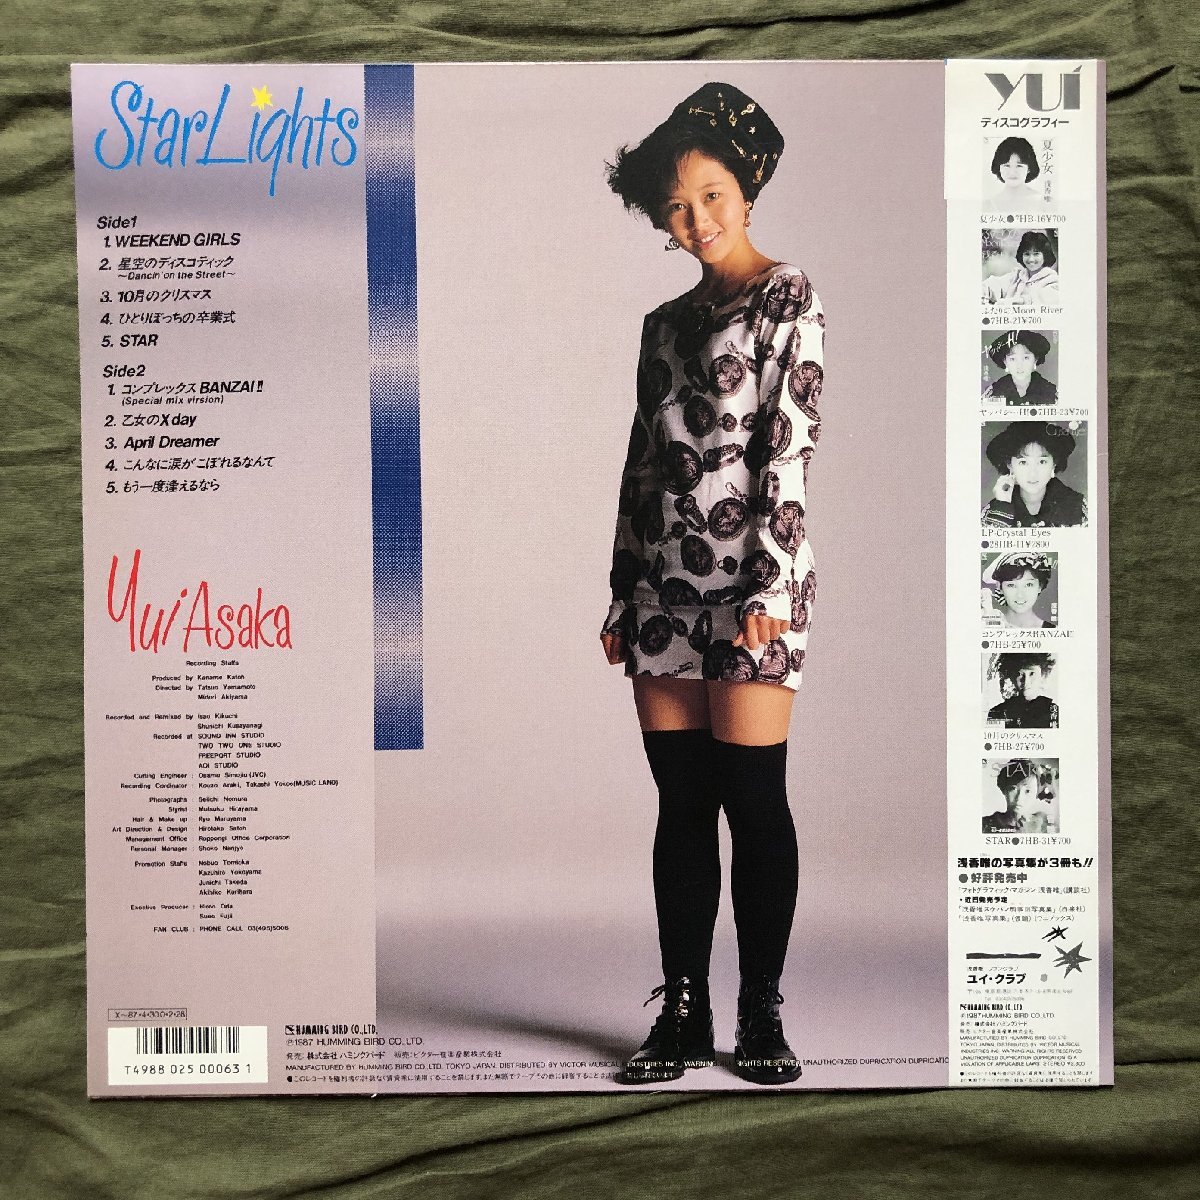  прекрасный jacket 1987 год Asaka Yui Yui Asaka LP запись Star laitsuStar Lights с лентой идол :Star 10 месяц. Рождество 